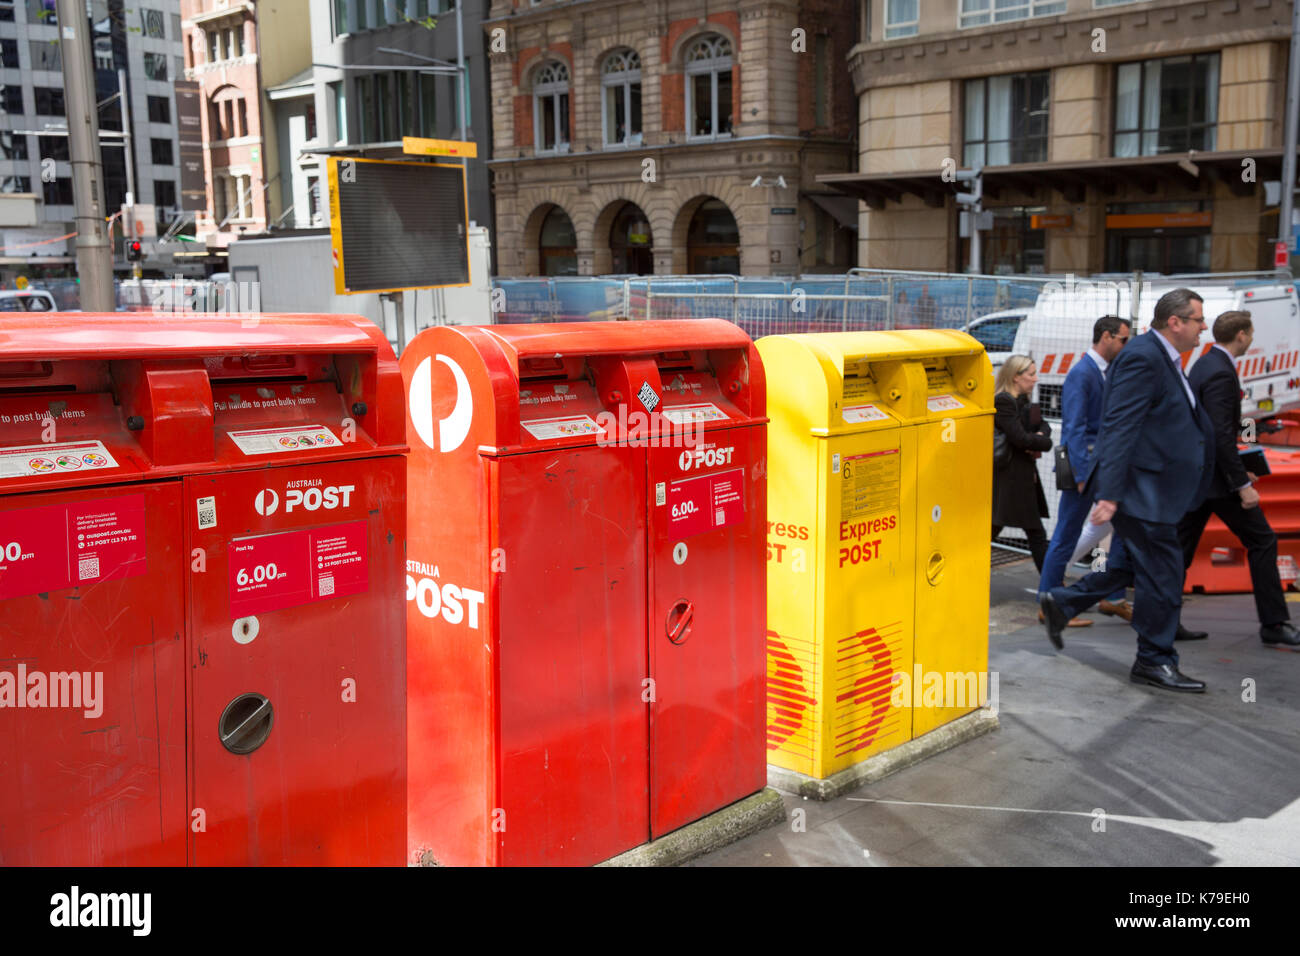 Australien Post Briefkästen im Stadtzentrum von Sydney, die gelbe Box ist  für den Express Versand Produkte, Sydney, Australien Stockfotografie - Alamy